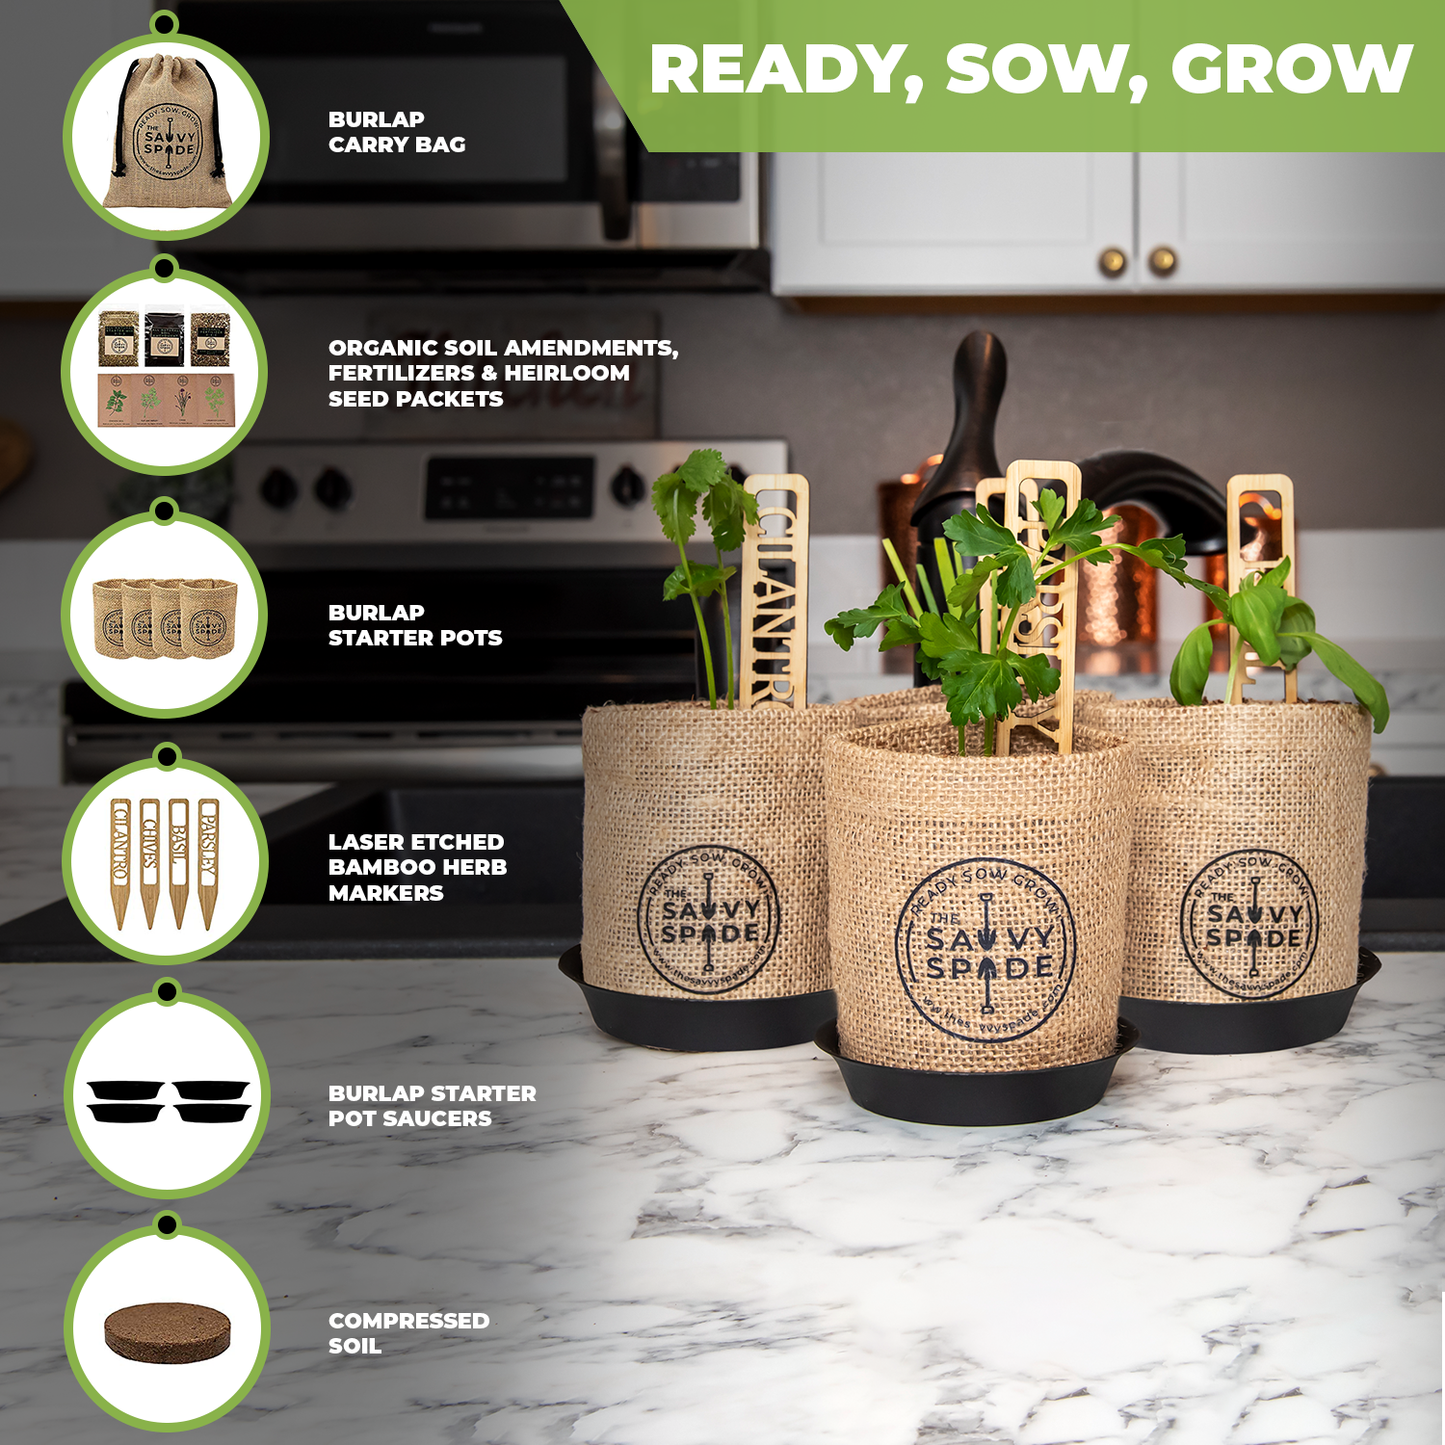 Herb Garden Starter Kit